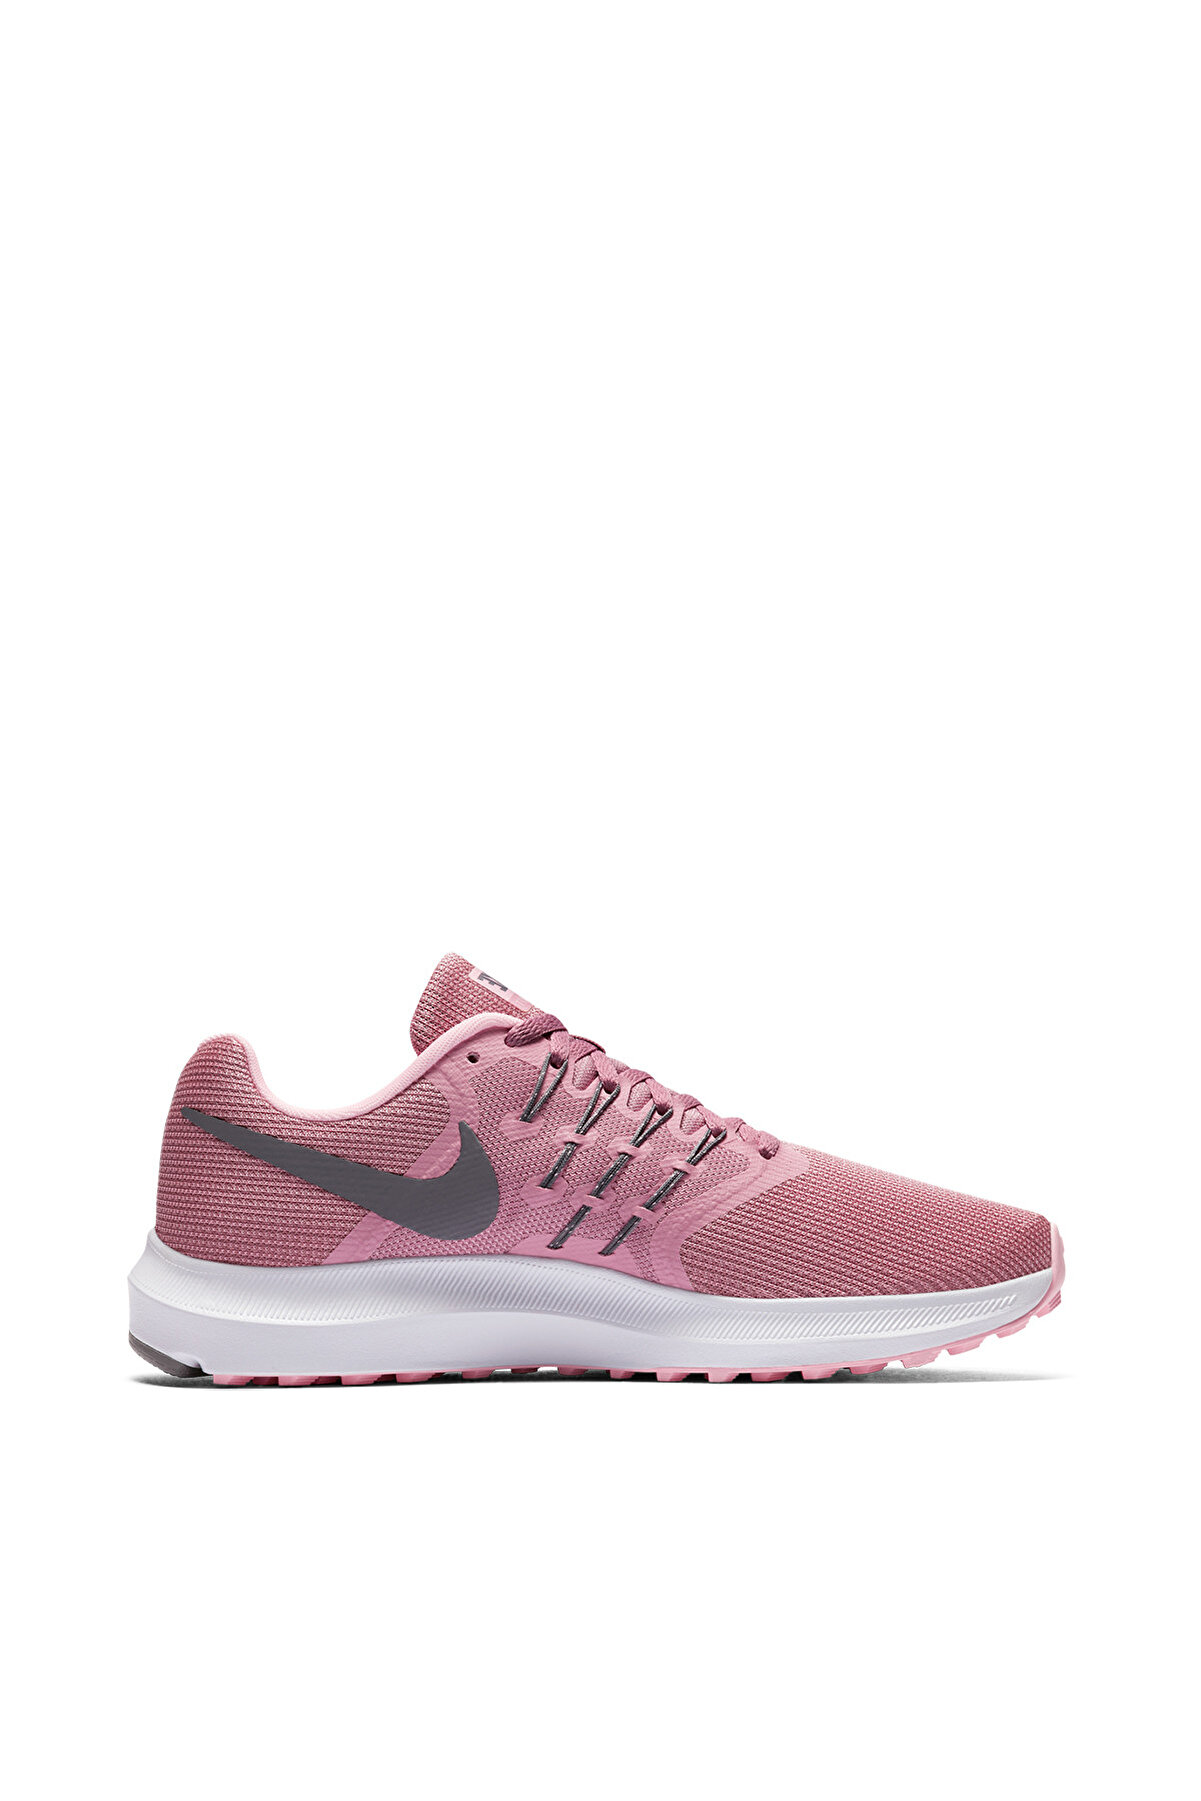 Nike Kadın Koşu Ayakkabı - Run Swift - 909006-600